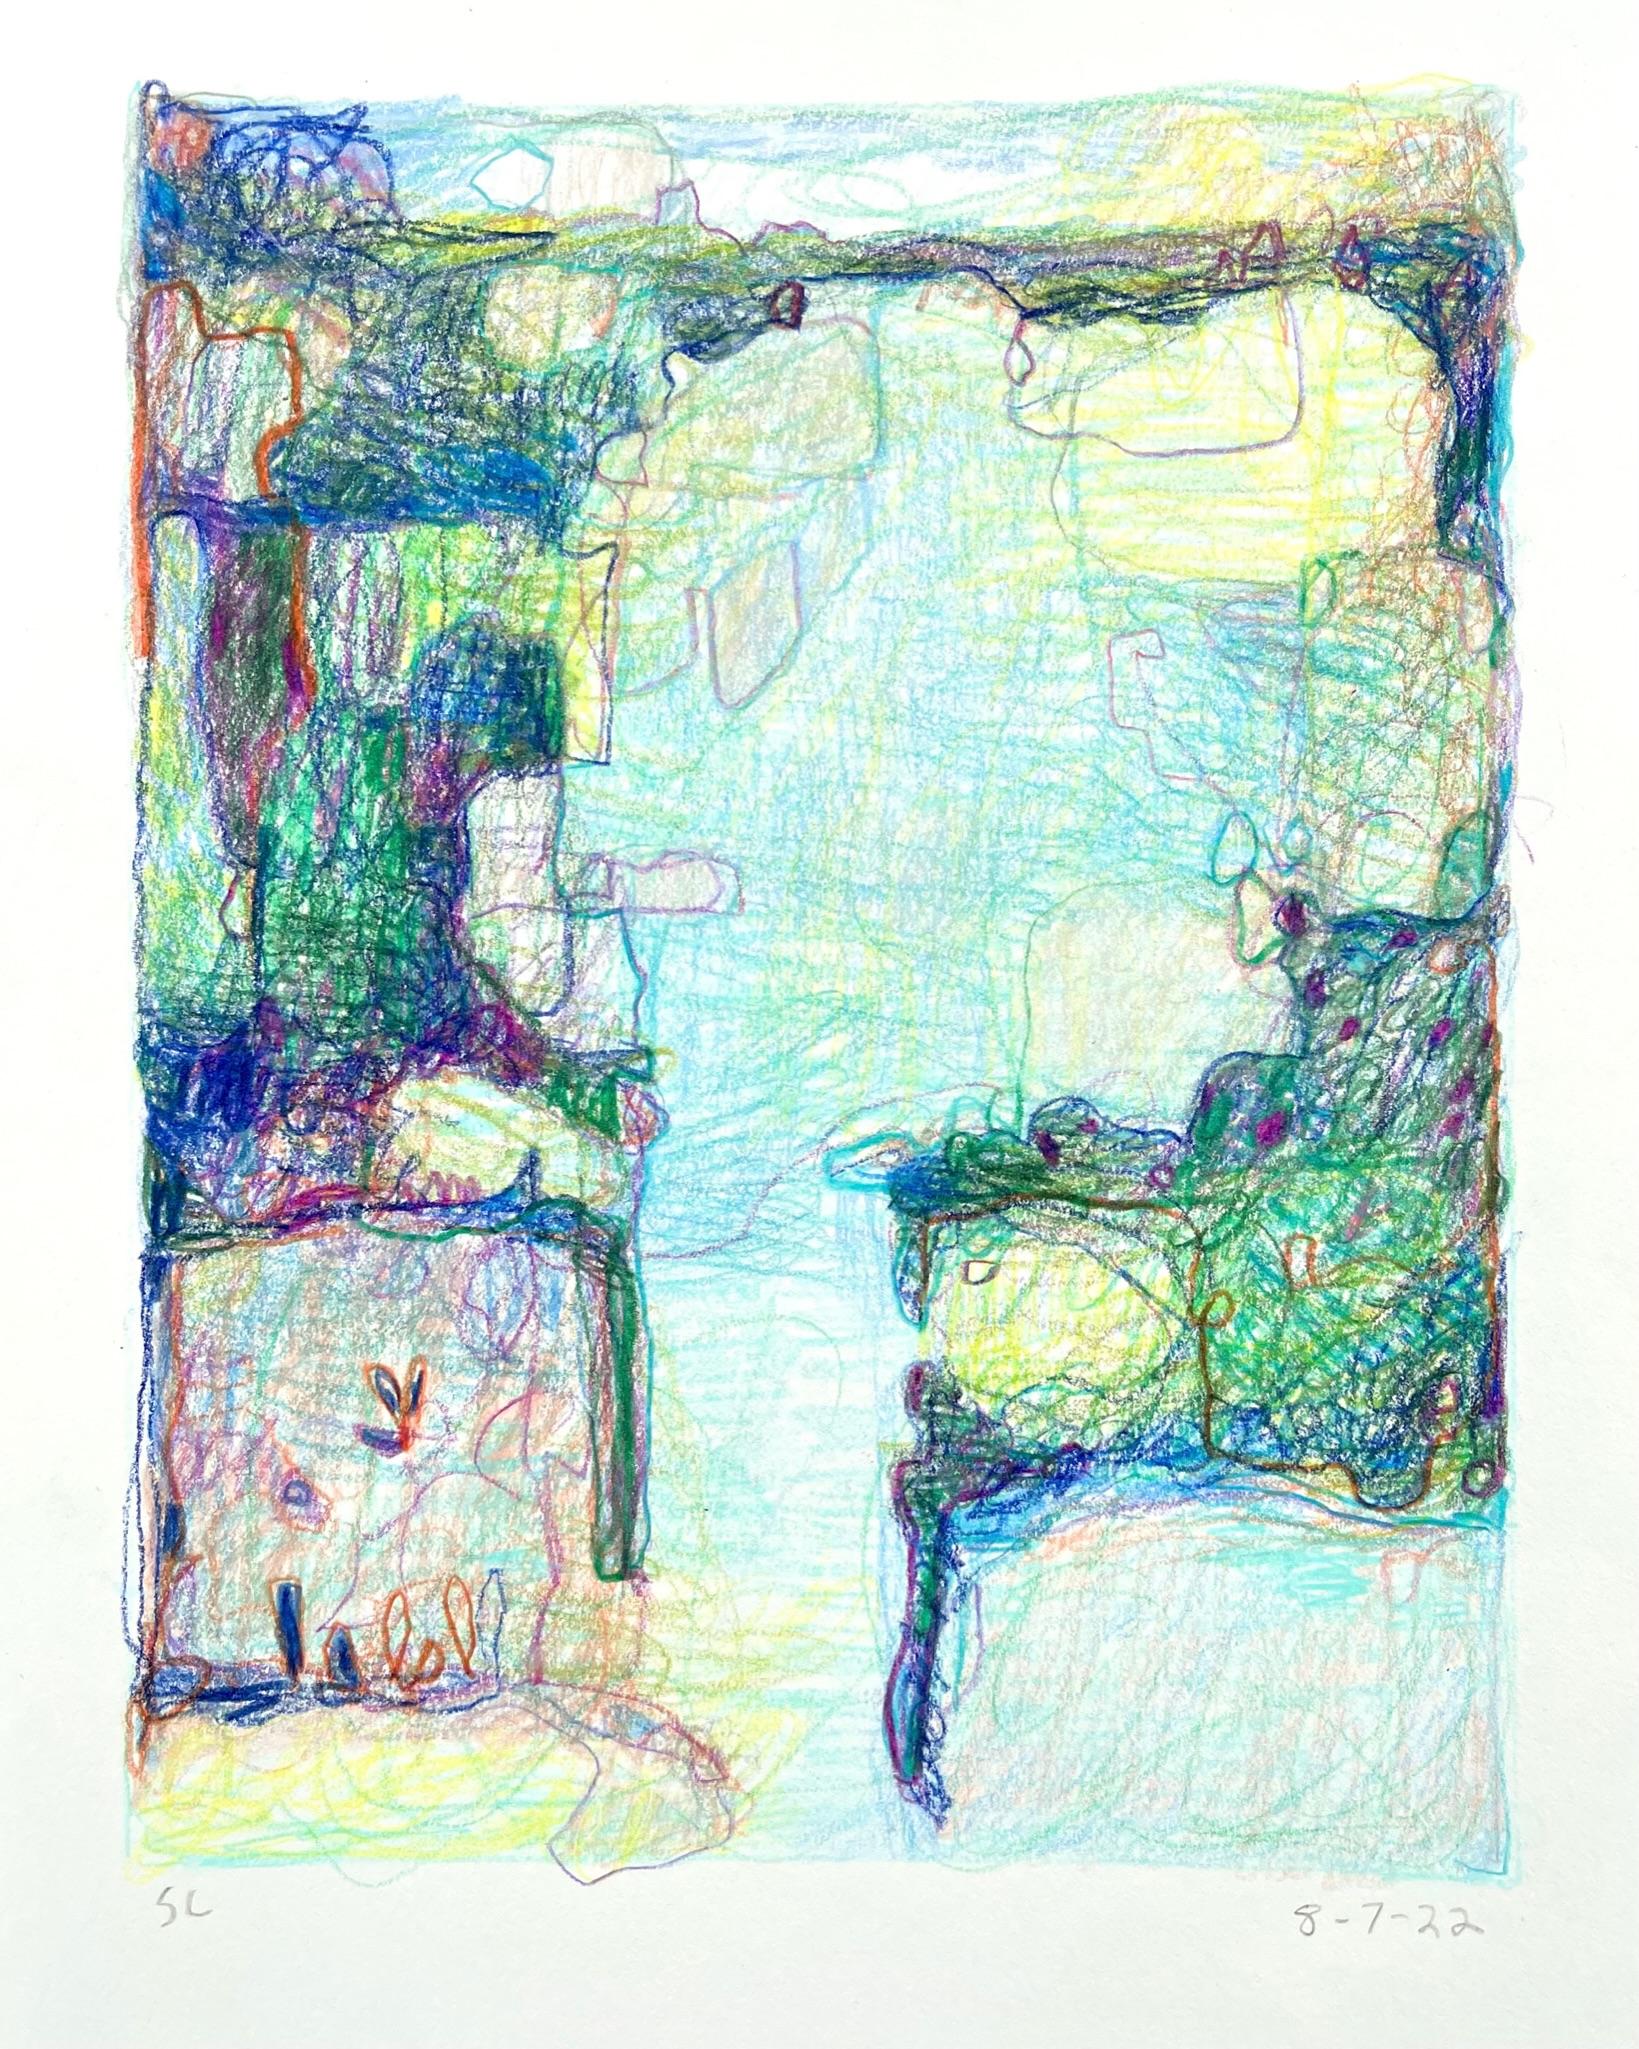 Abstract Drawing Sandy Litchfield - 8-7-22, dessin de paysage abstrait impressionniste au crayon en couleur